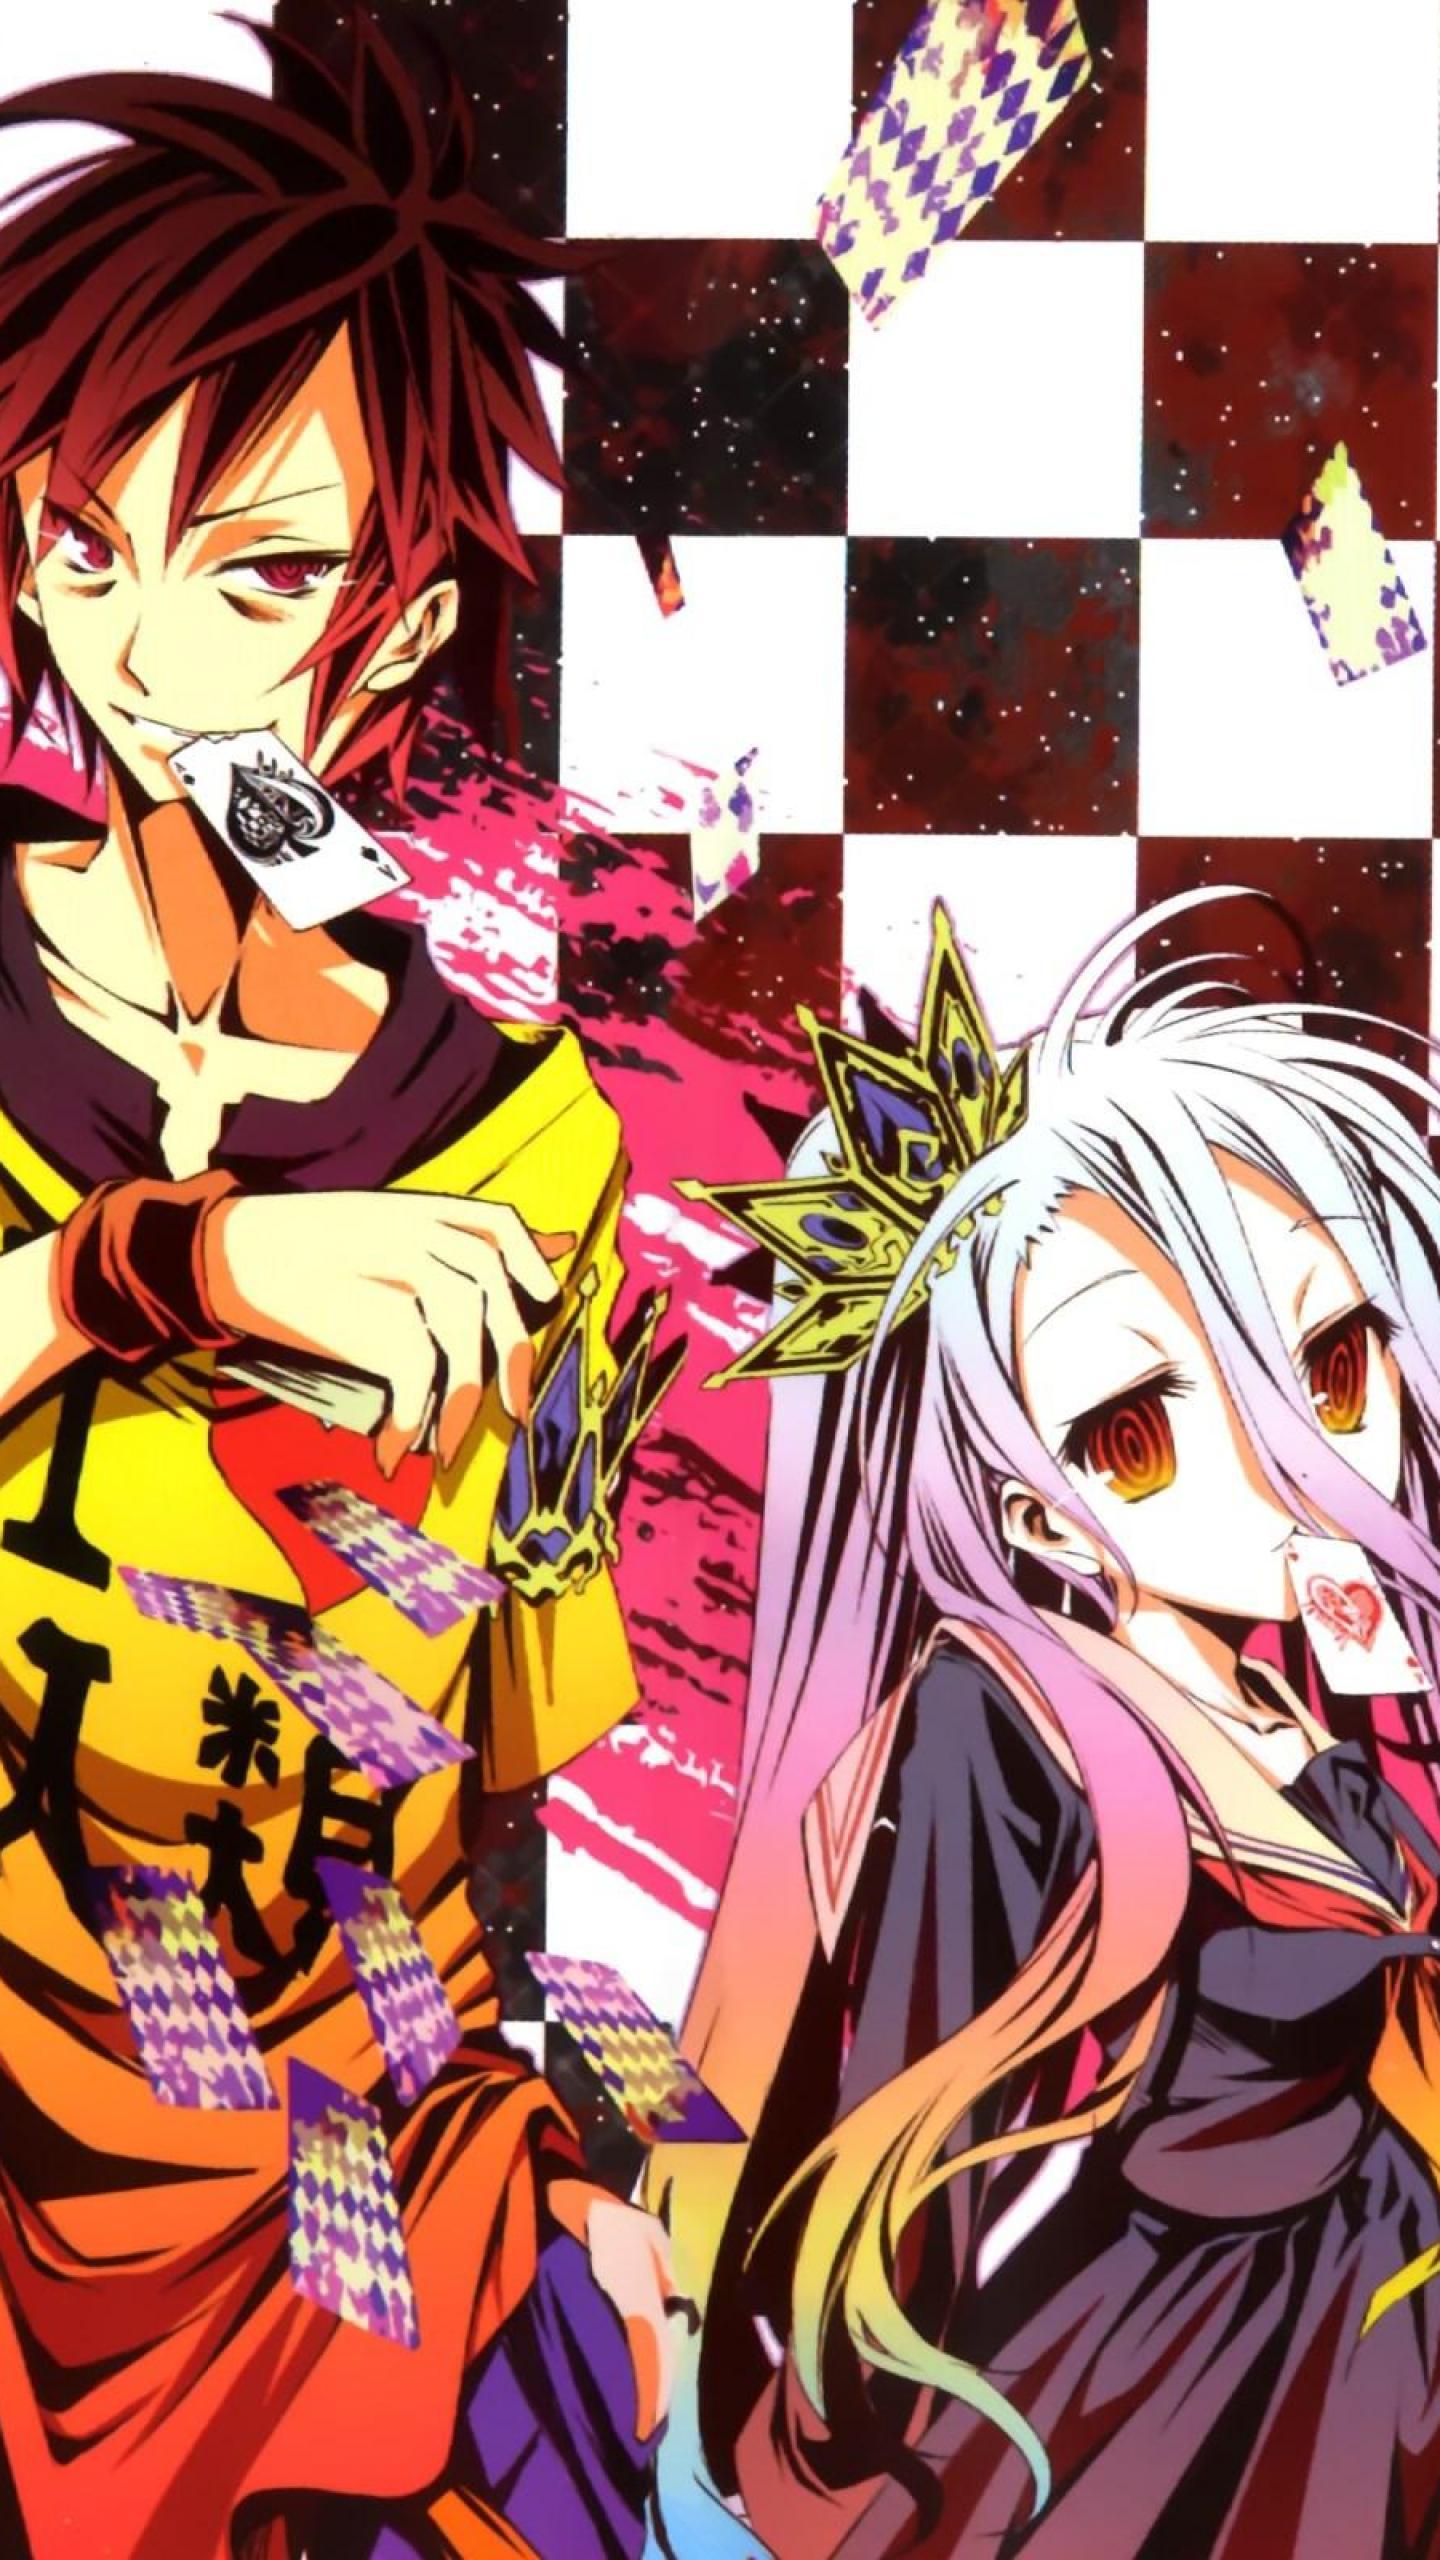 12 Wallpaper Anime Shiro No Game No Life Tachi Wallpaper